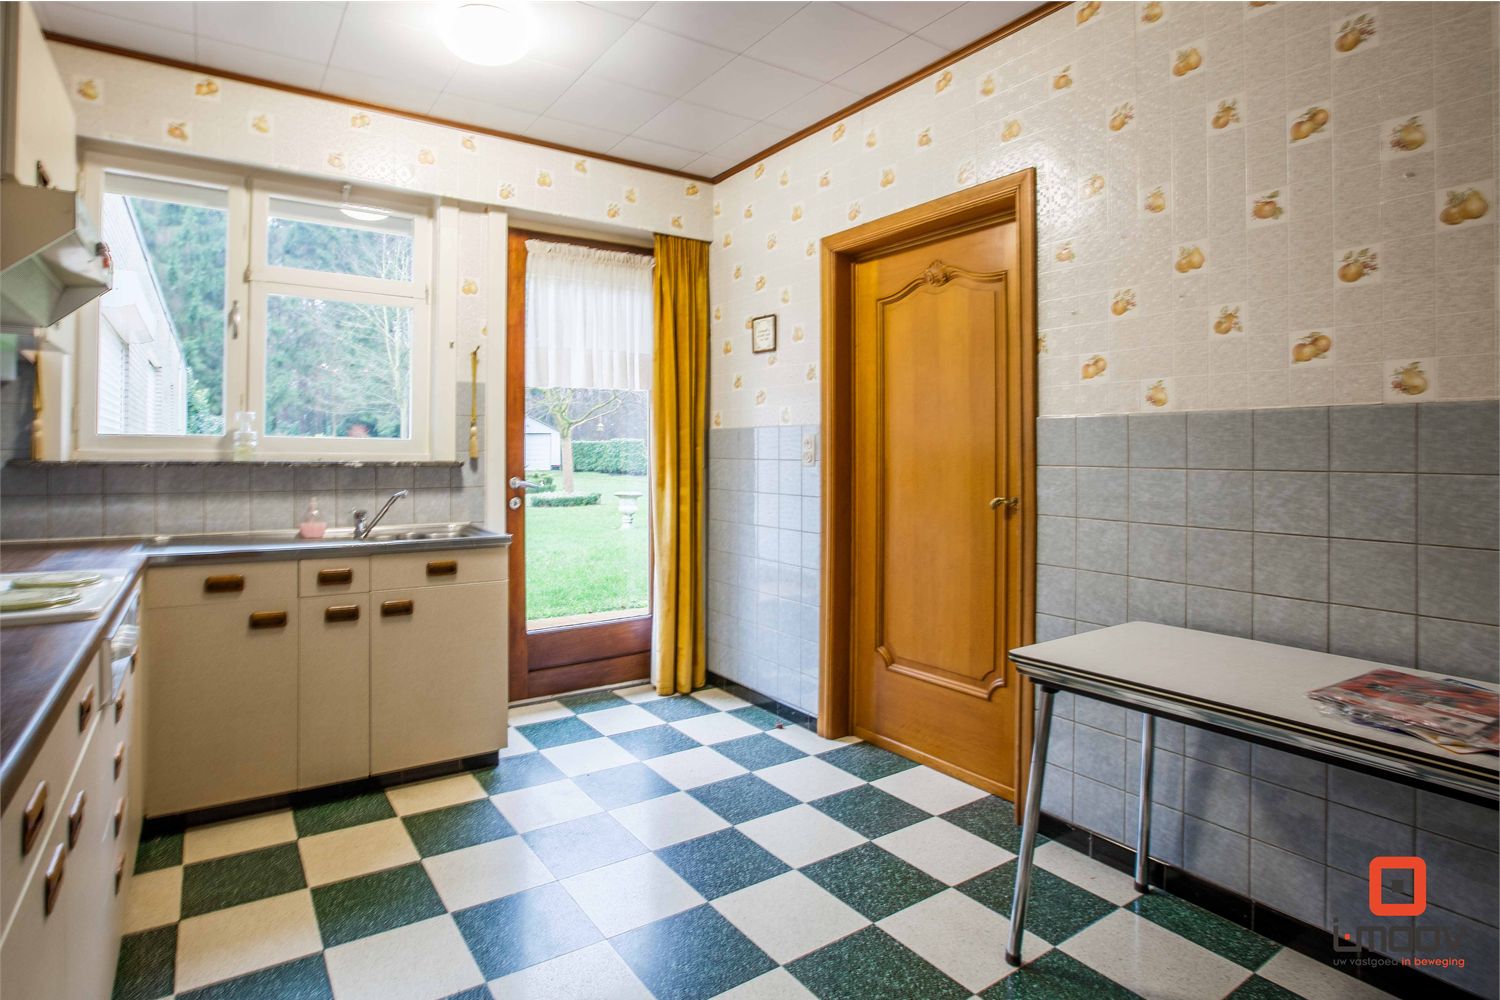 Villa verkocht in Heusden (9070)